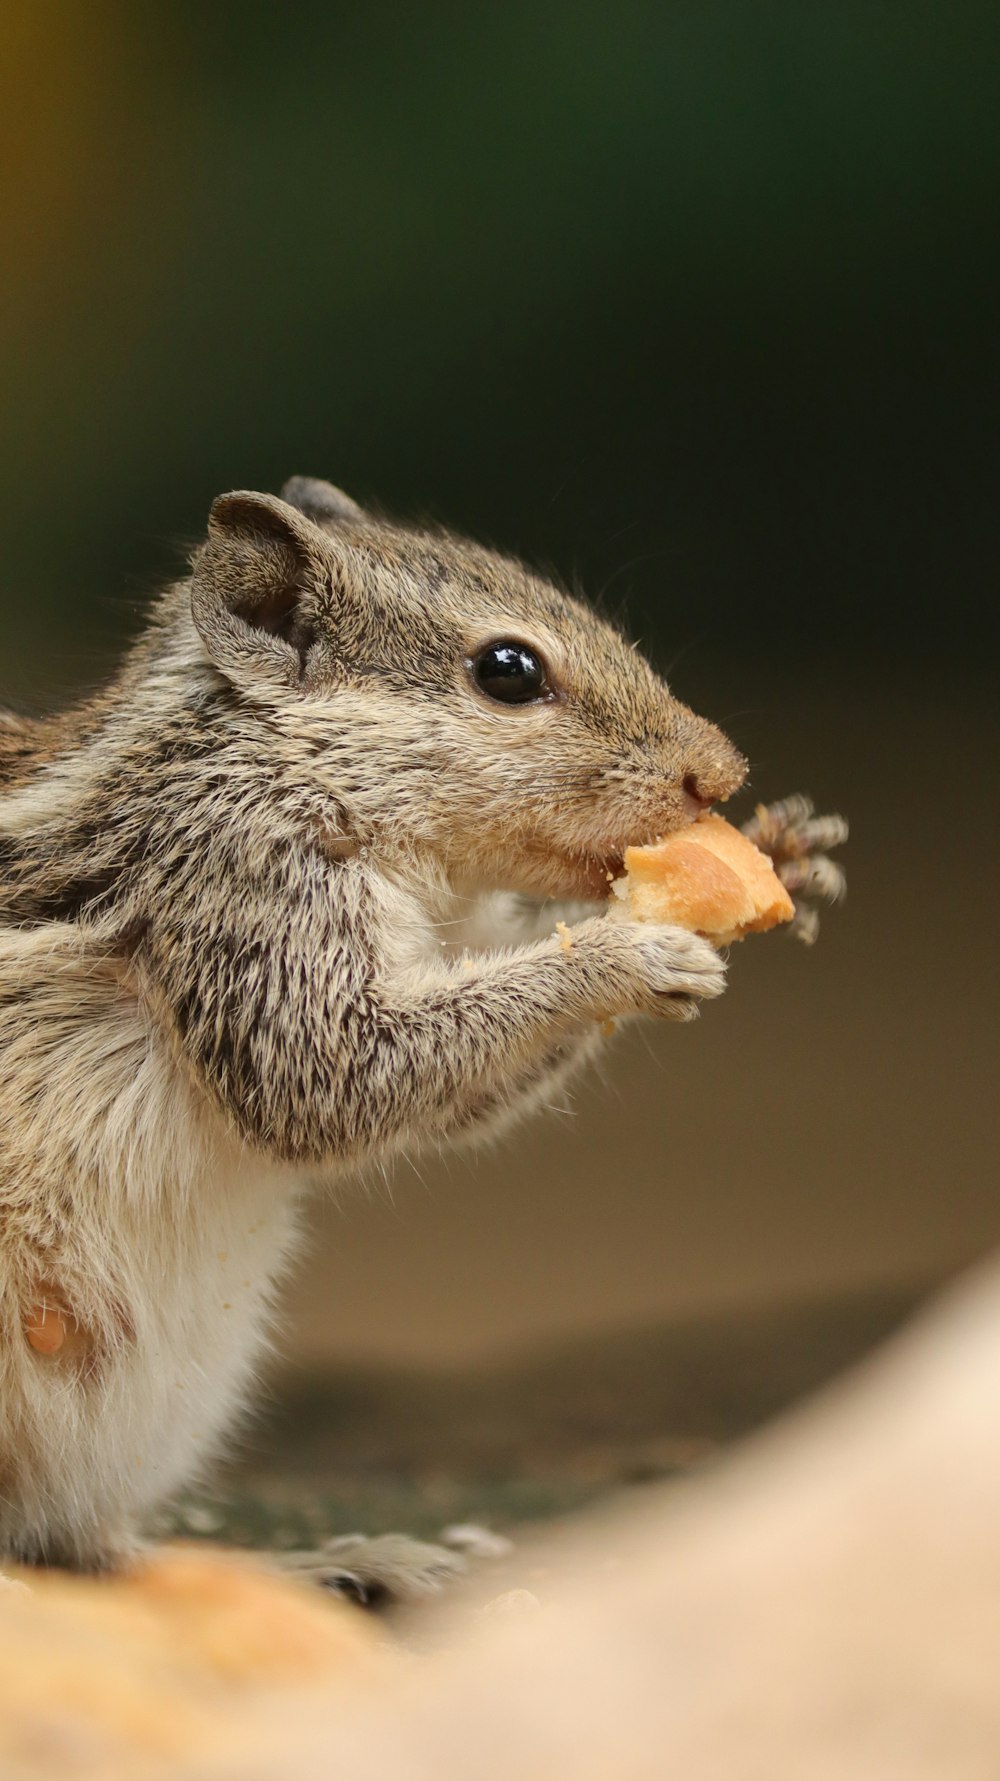 un piccolo roditore che mangia un pezzo di pane